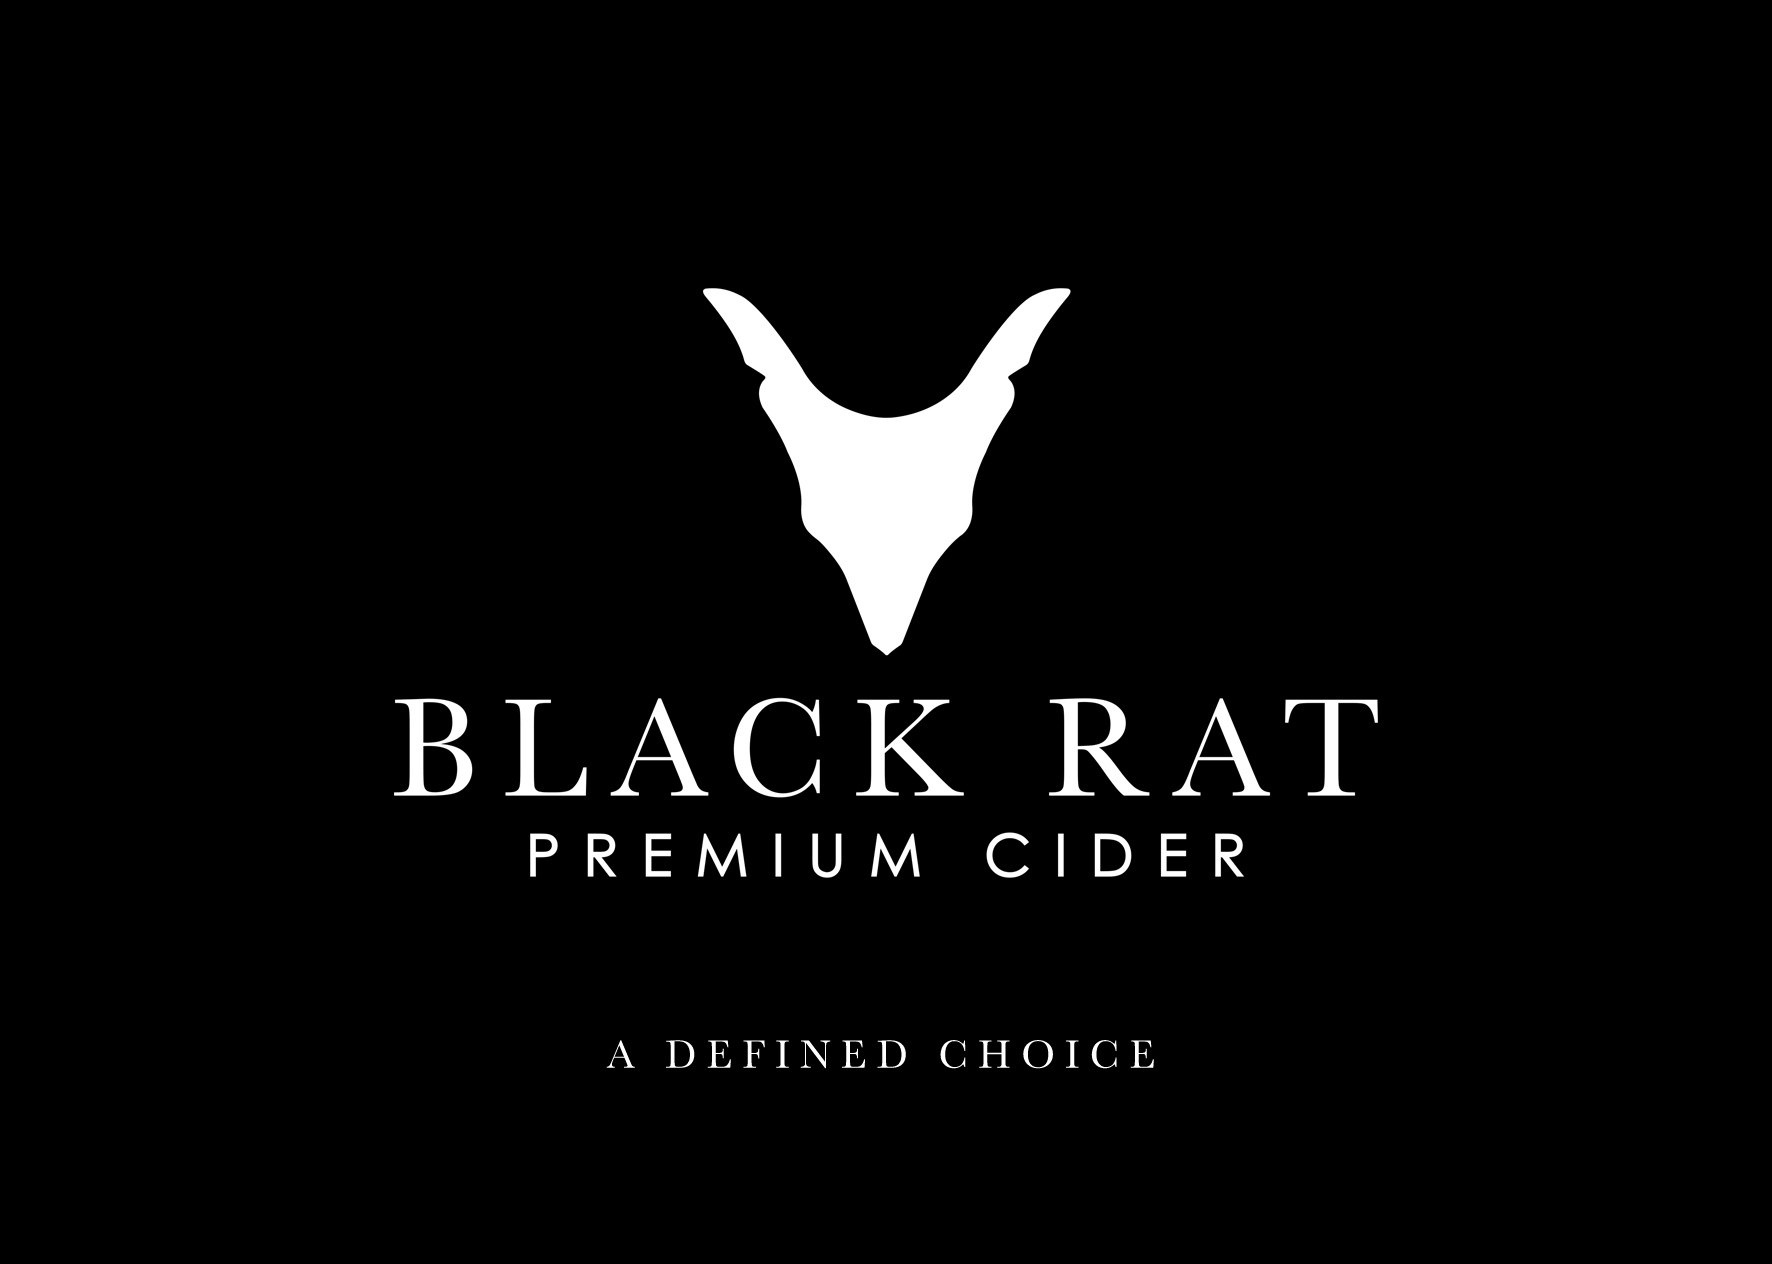 Black Rat Cider